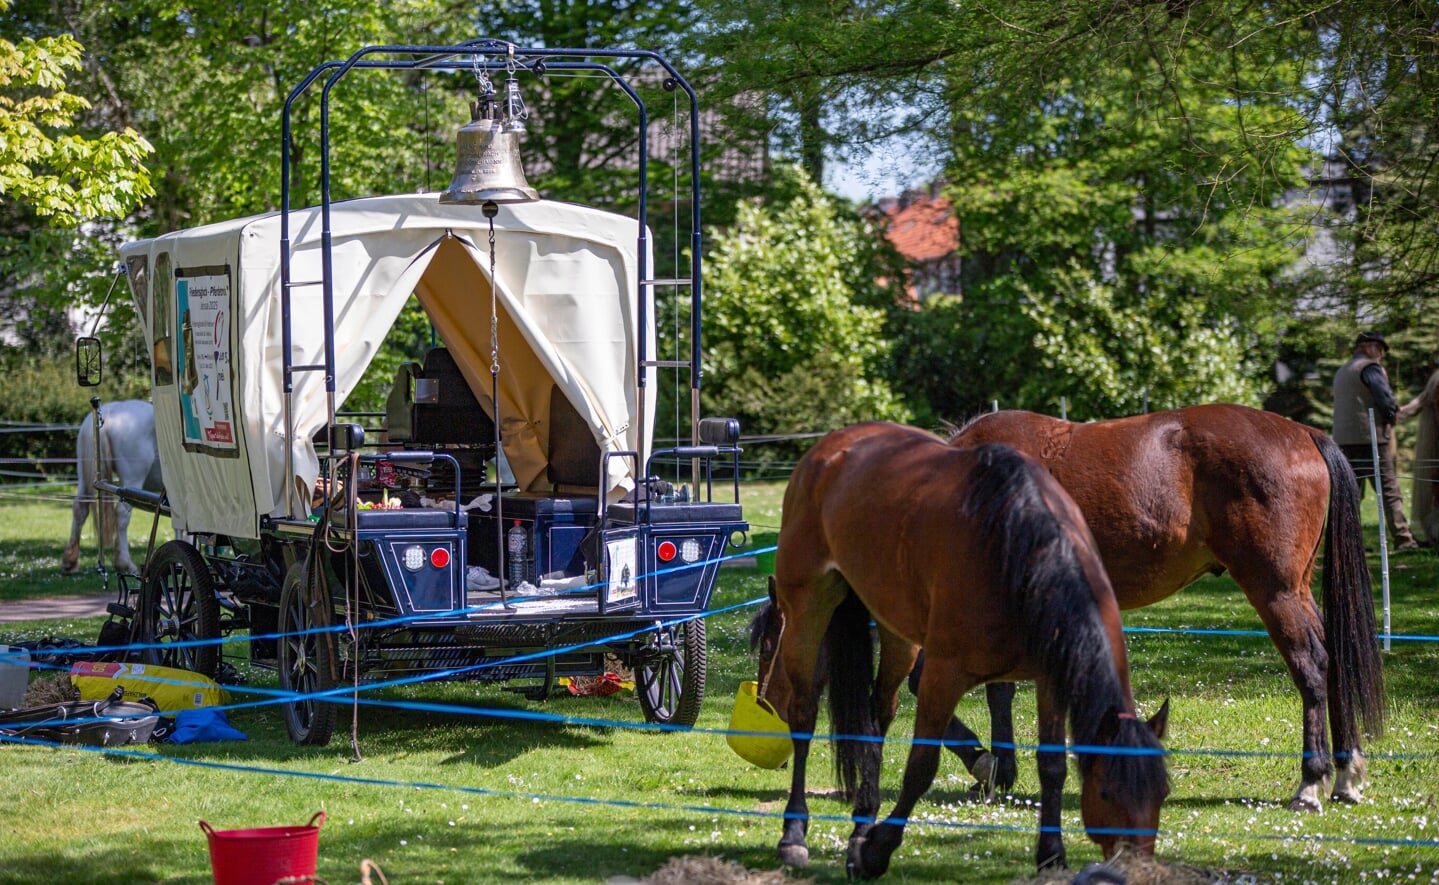 De vredeskaravaan met paard en wagens hield zondagmiddag even halt in park Molenwijk in Boxtel. De groep was op weg naar Waterloo in België.